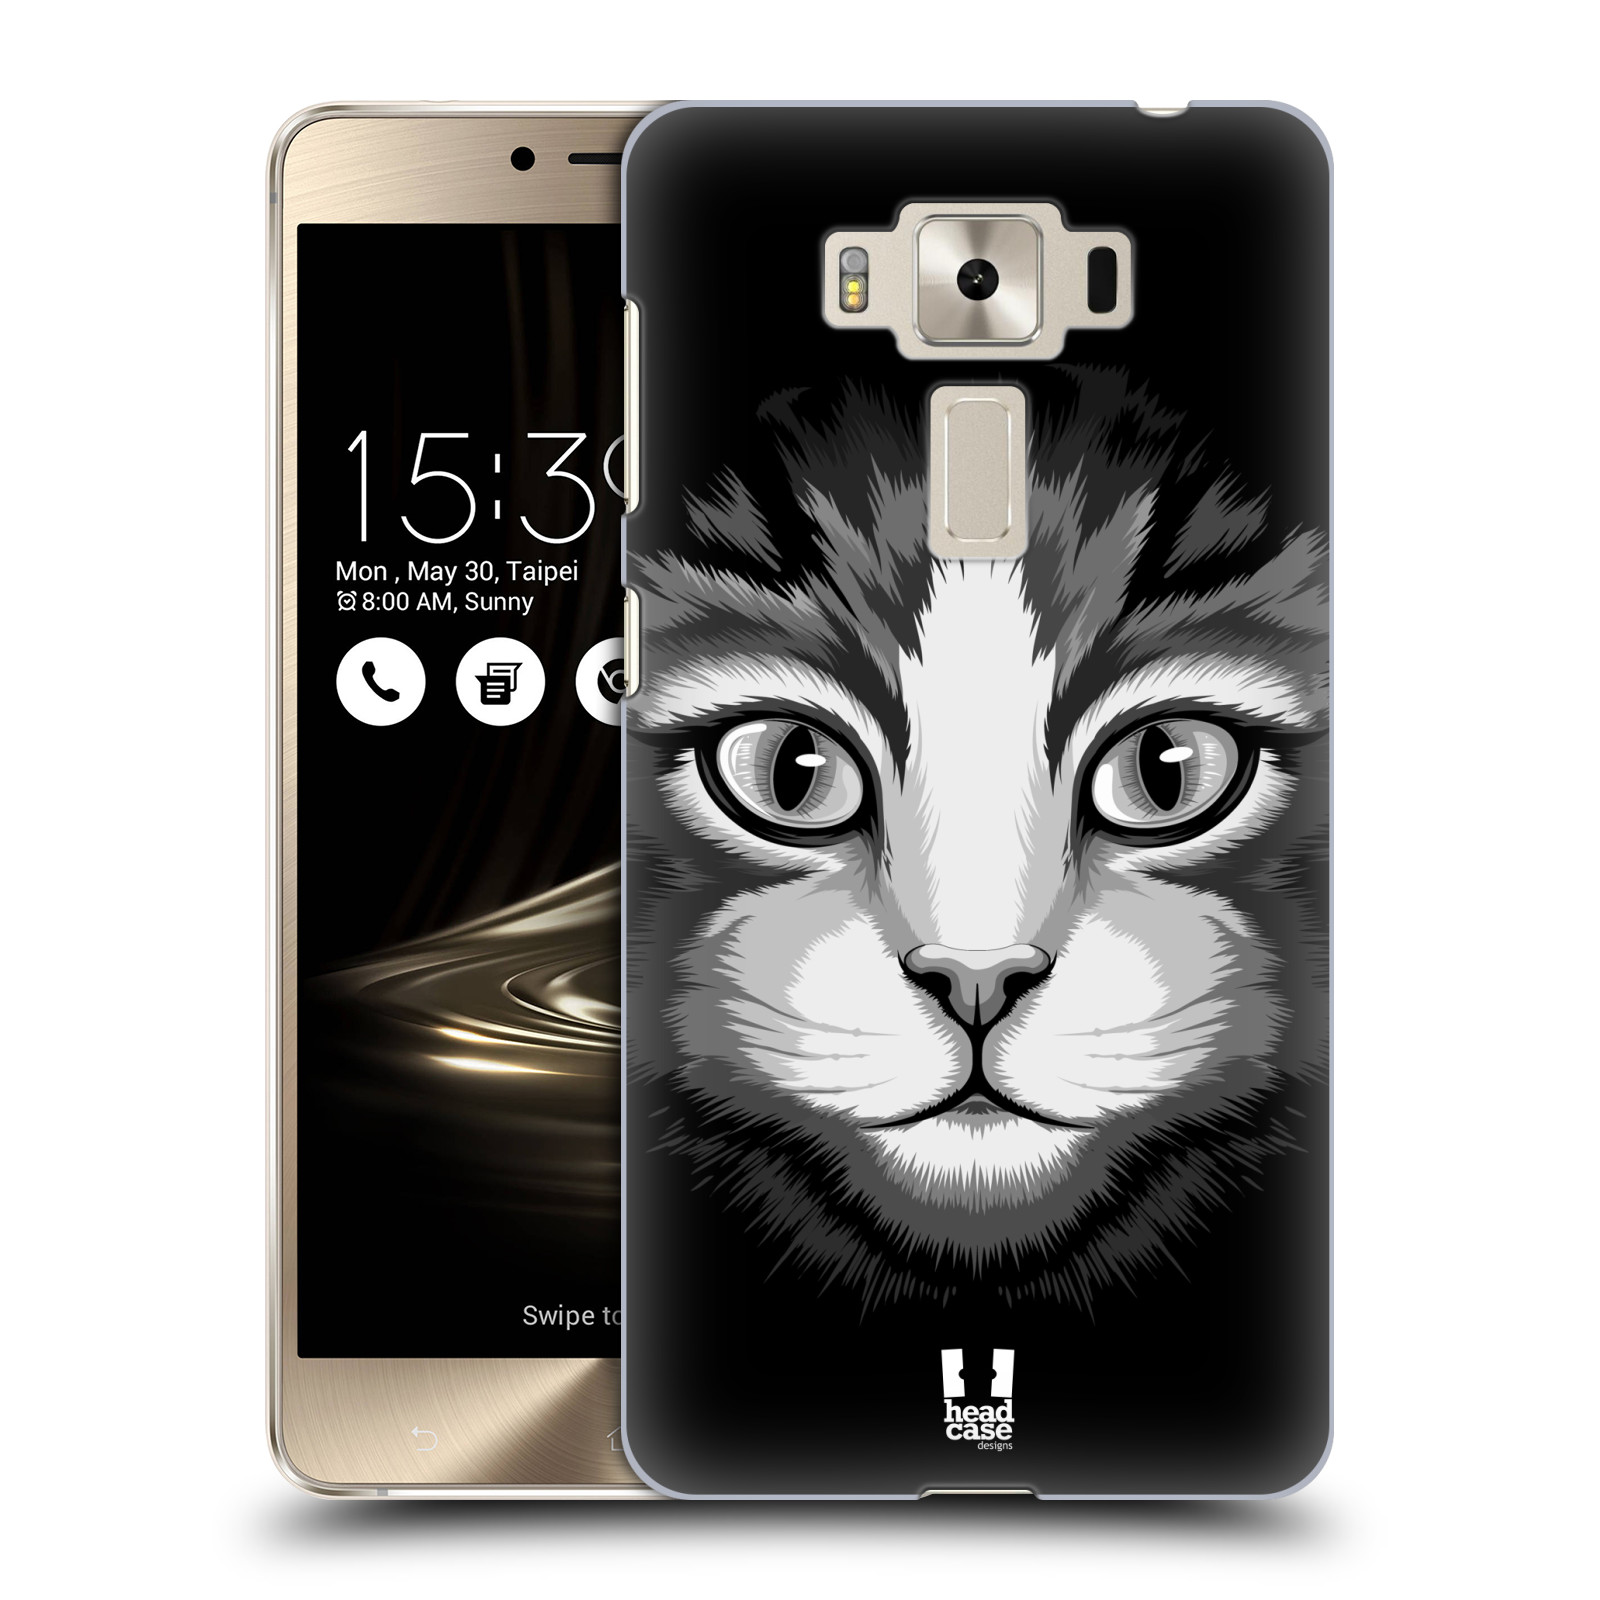 HEAD CASE plastový obal na mobil Asus Zenfone 3 DELUXE ZS550KL vzor Zvíře kreslená tvář 2 kočička